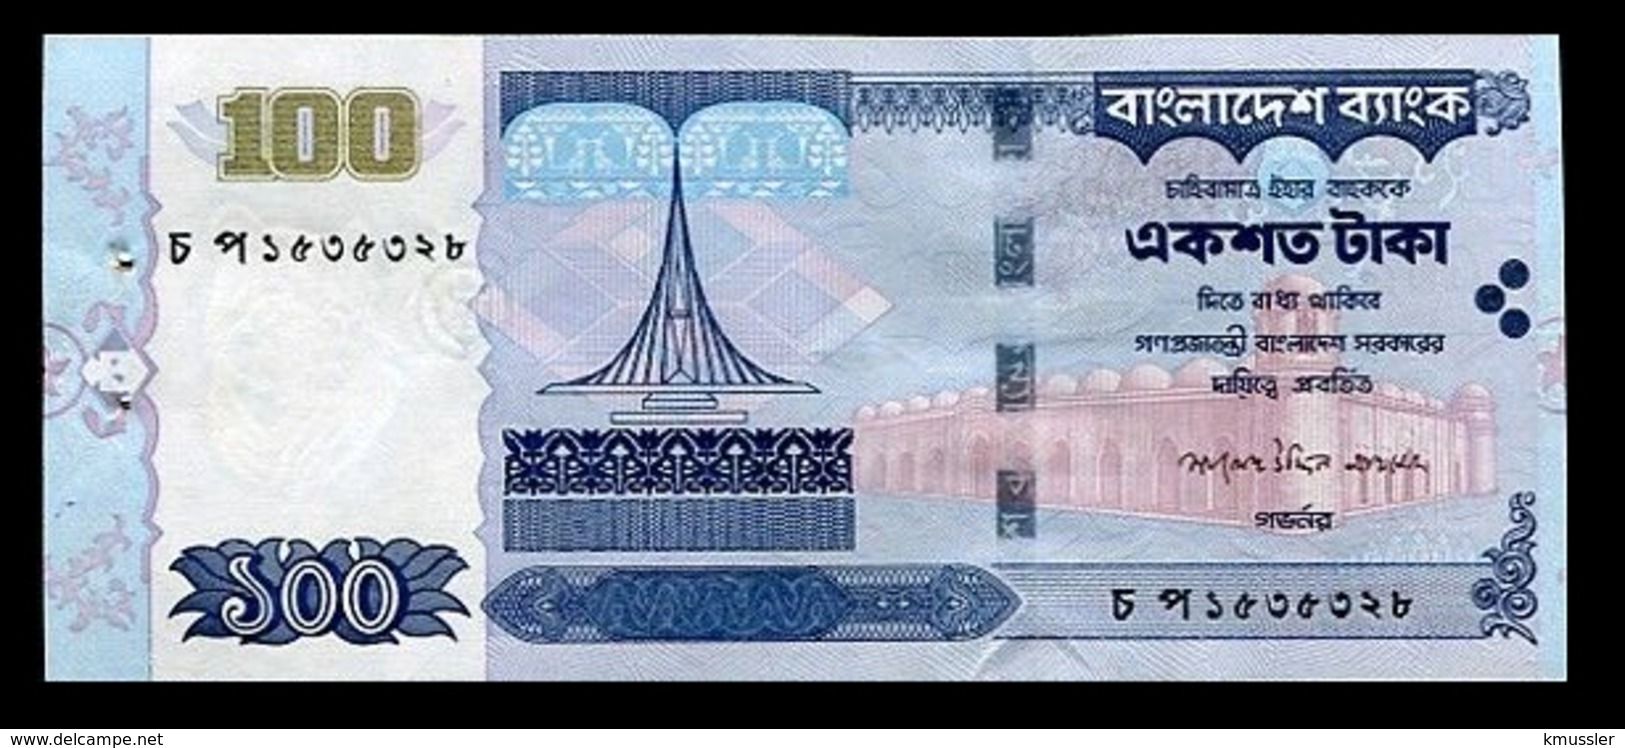 # # # Banknote Bangladesh 100 Taka 2005 UNC # # # - Bangladesh